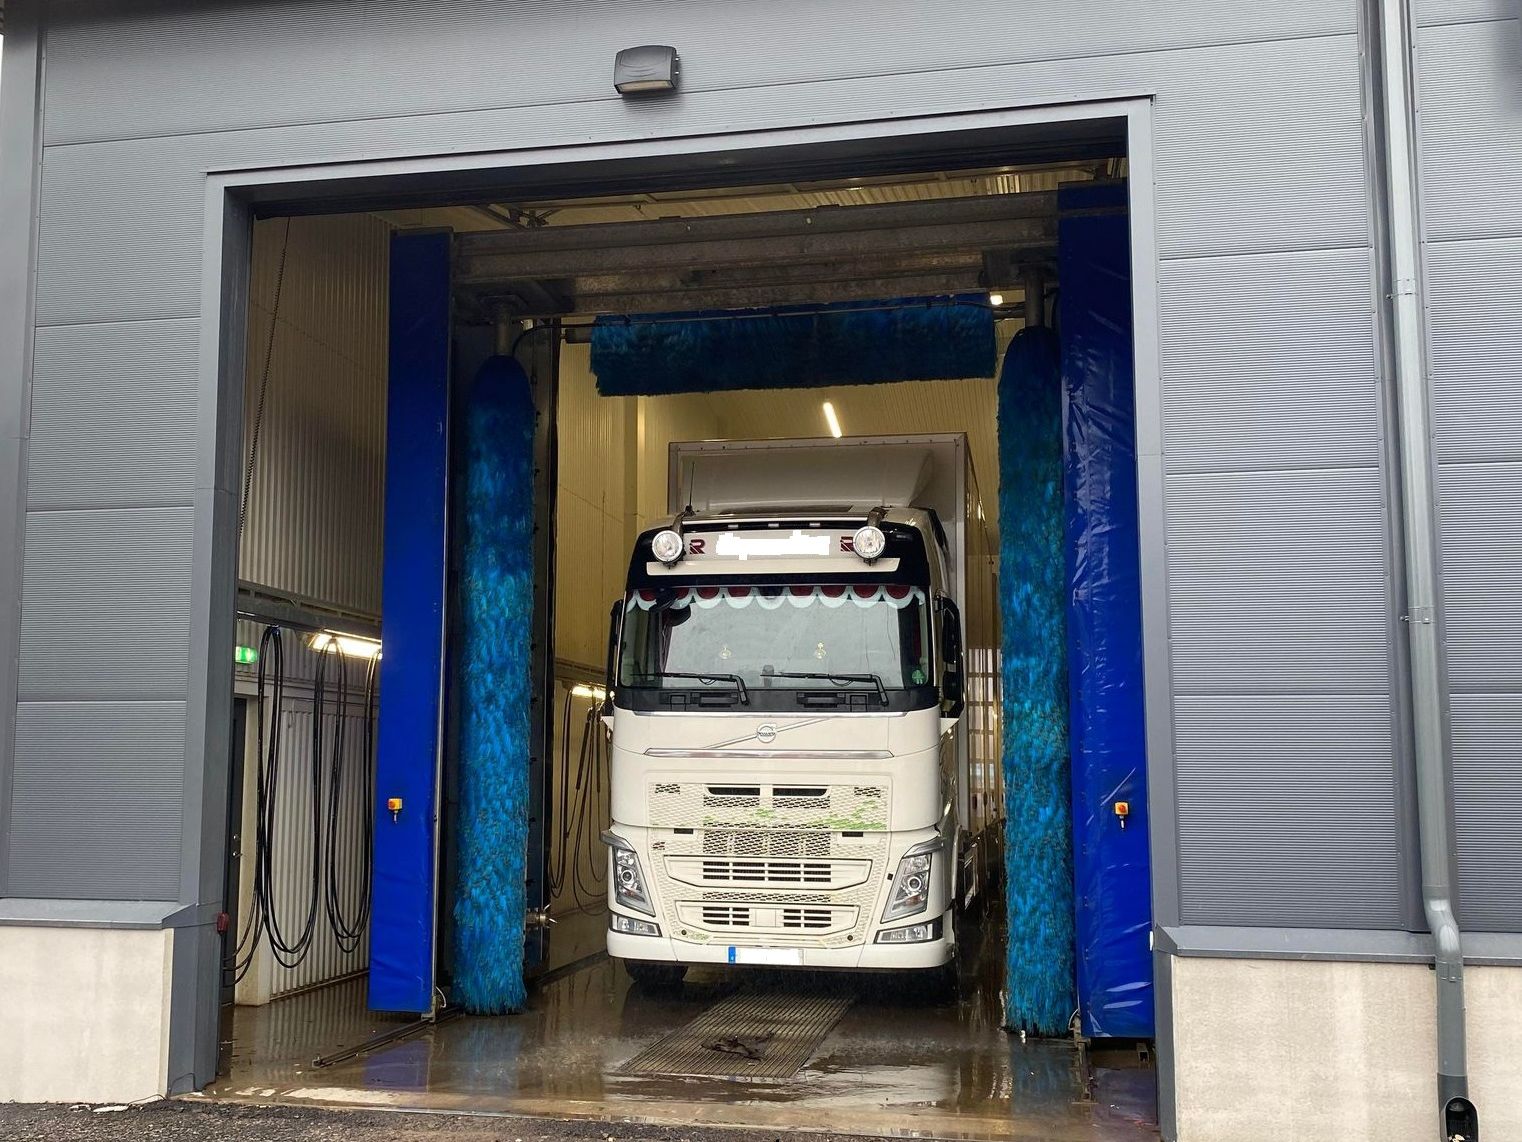 Tvätthall med maskintvätt för tunga fordon i Sunne utmed E45